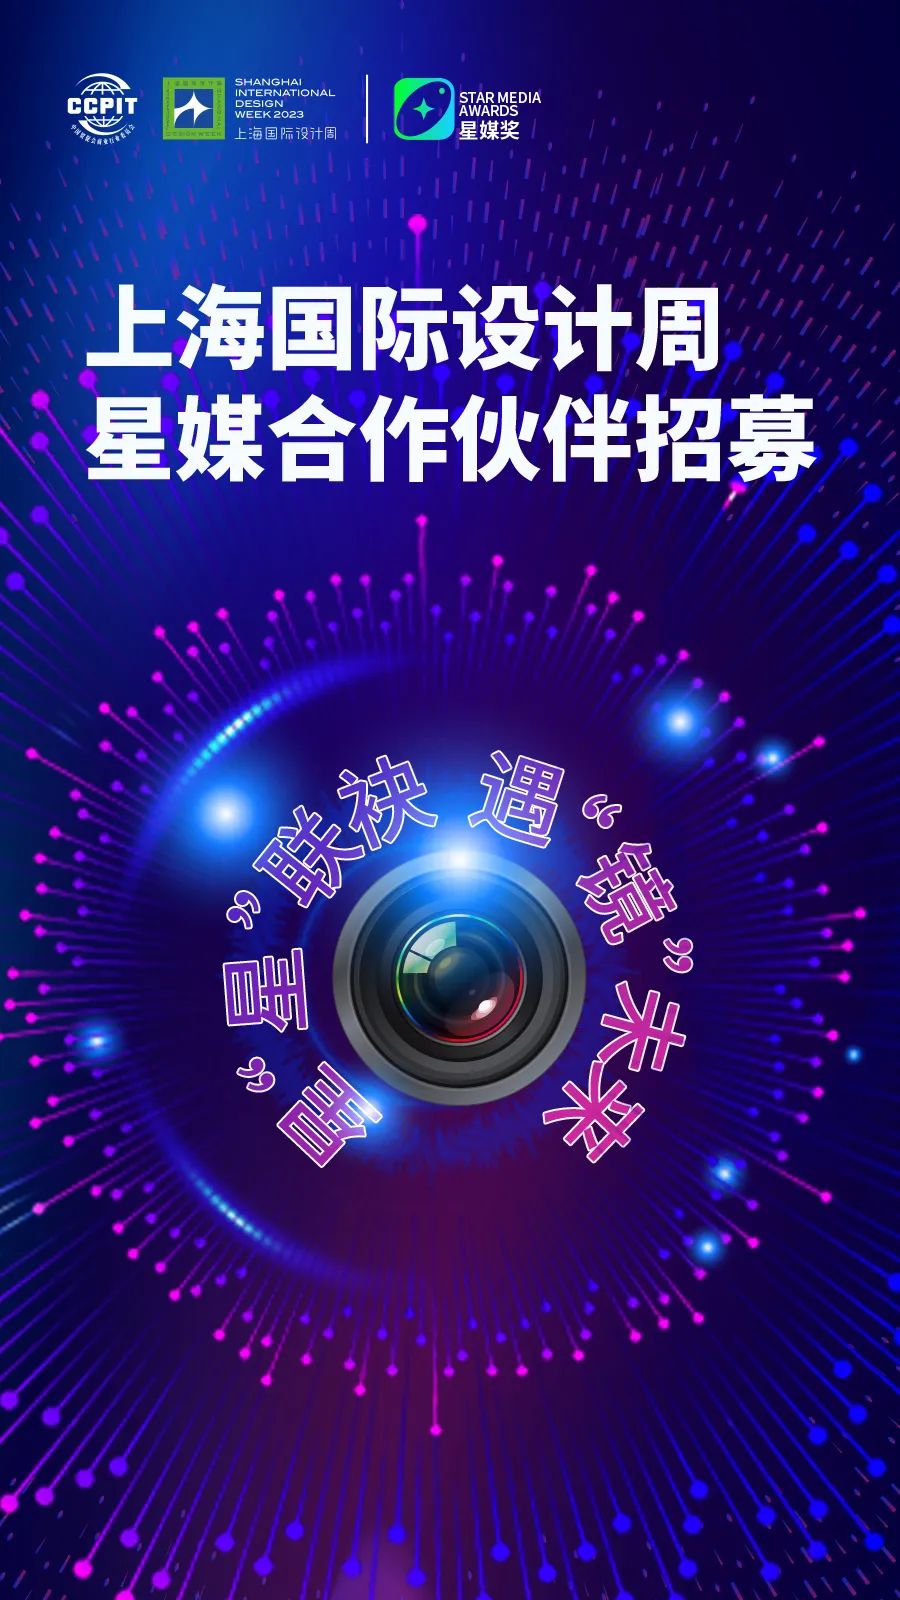 星“星”联袂，遇“镜”未来 | 上海国际设计周星媒合作伙伴正在招募中！